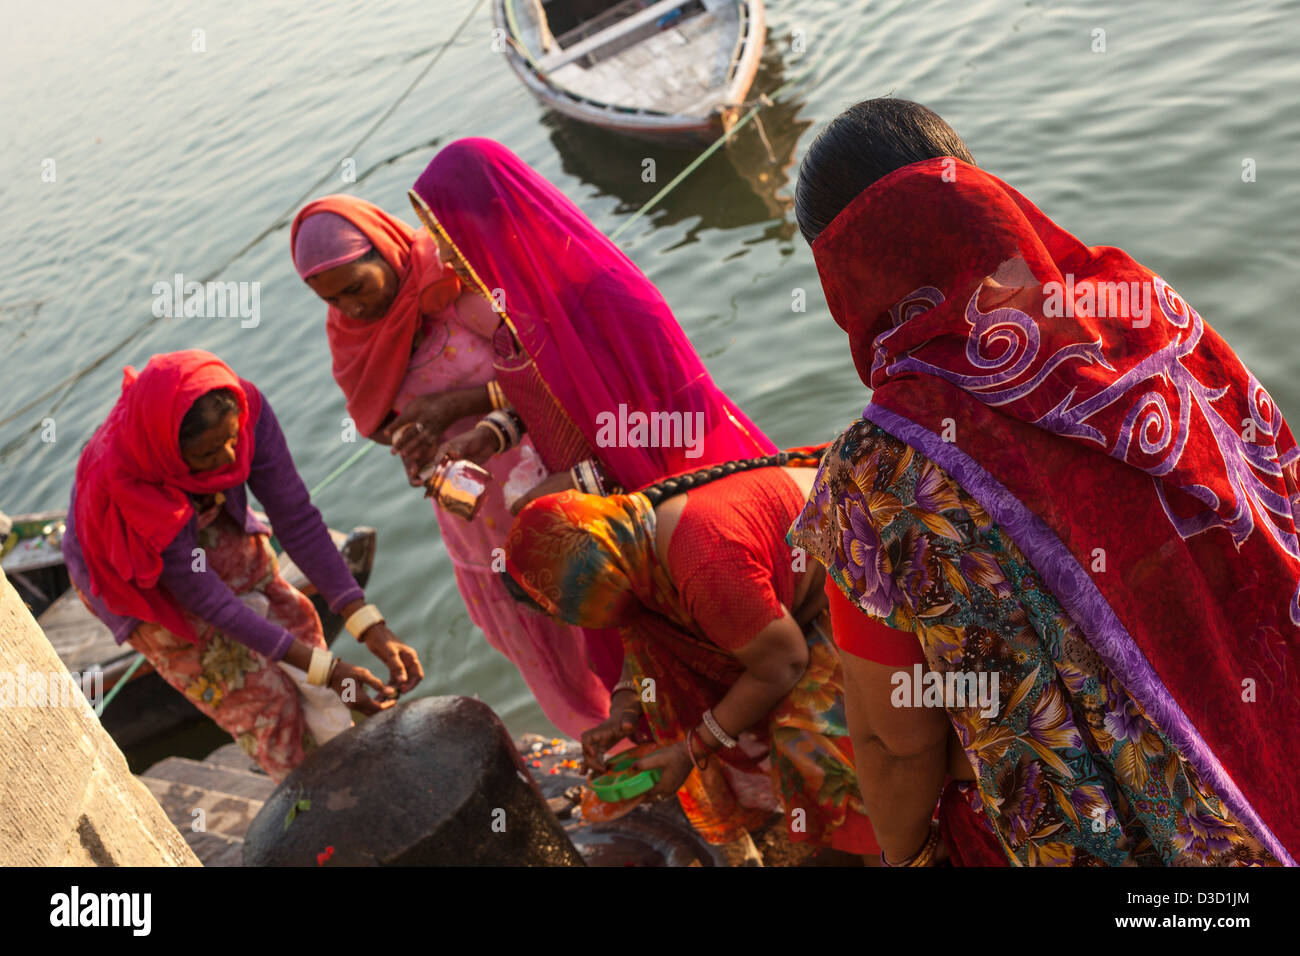 Les femmes en saris, Varanasi, Inde Banque D'Images